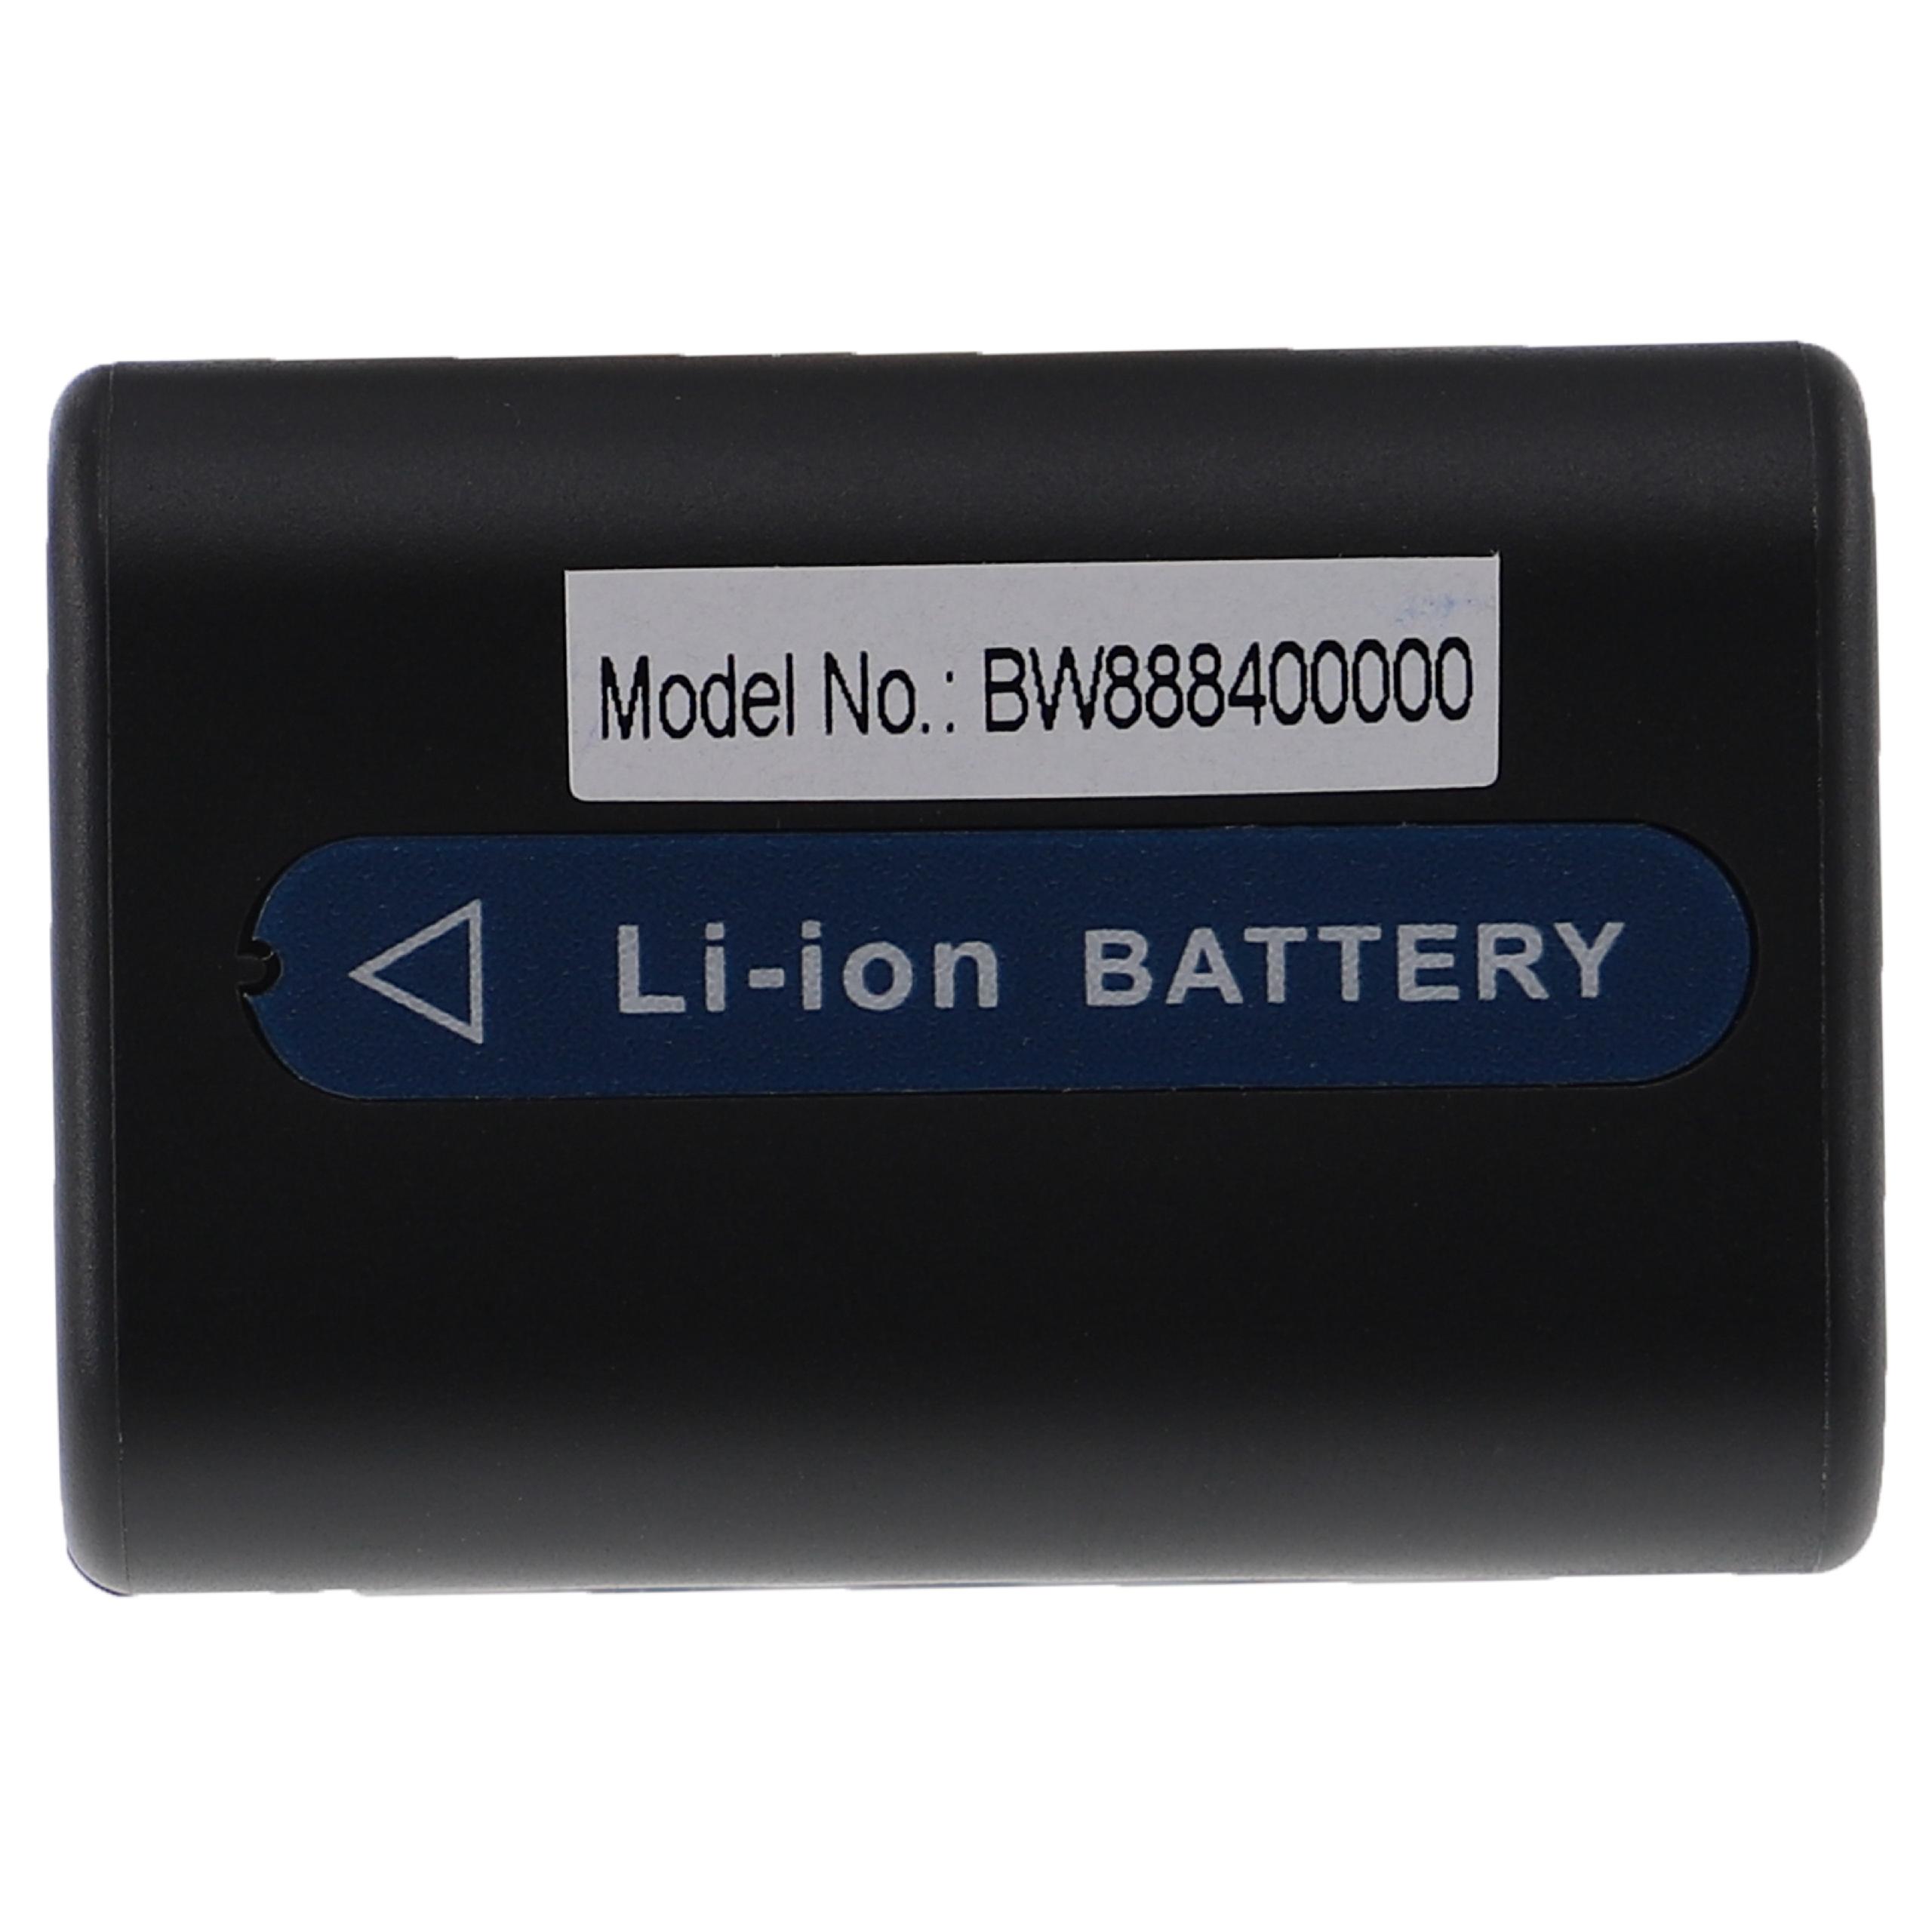 Batterie remplace Sony NP-FM55H, NP-FM90, NP-FM70, NP-FM50, NP-FM30 pour appareil photo - 1600mAh 7,4V Li-ion